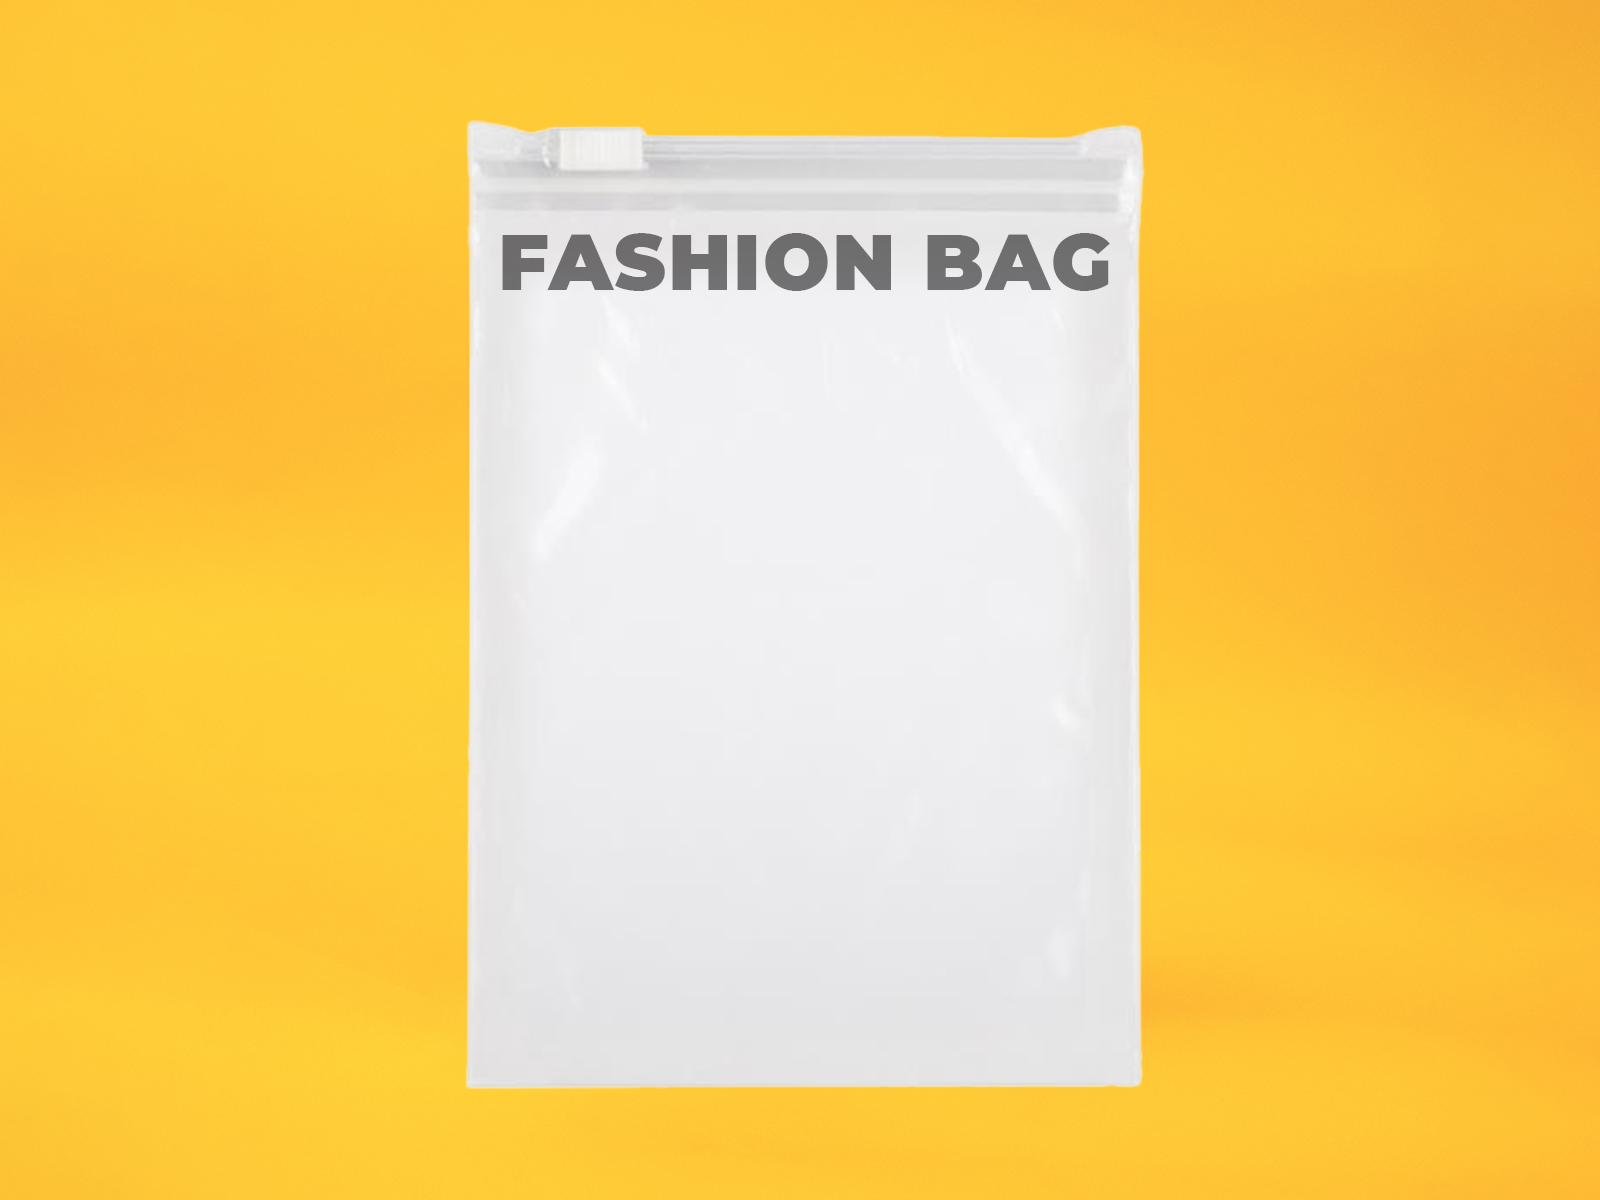 Fashion bag